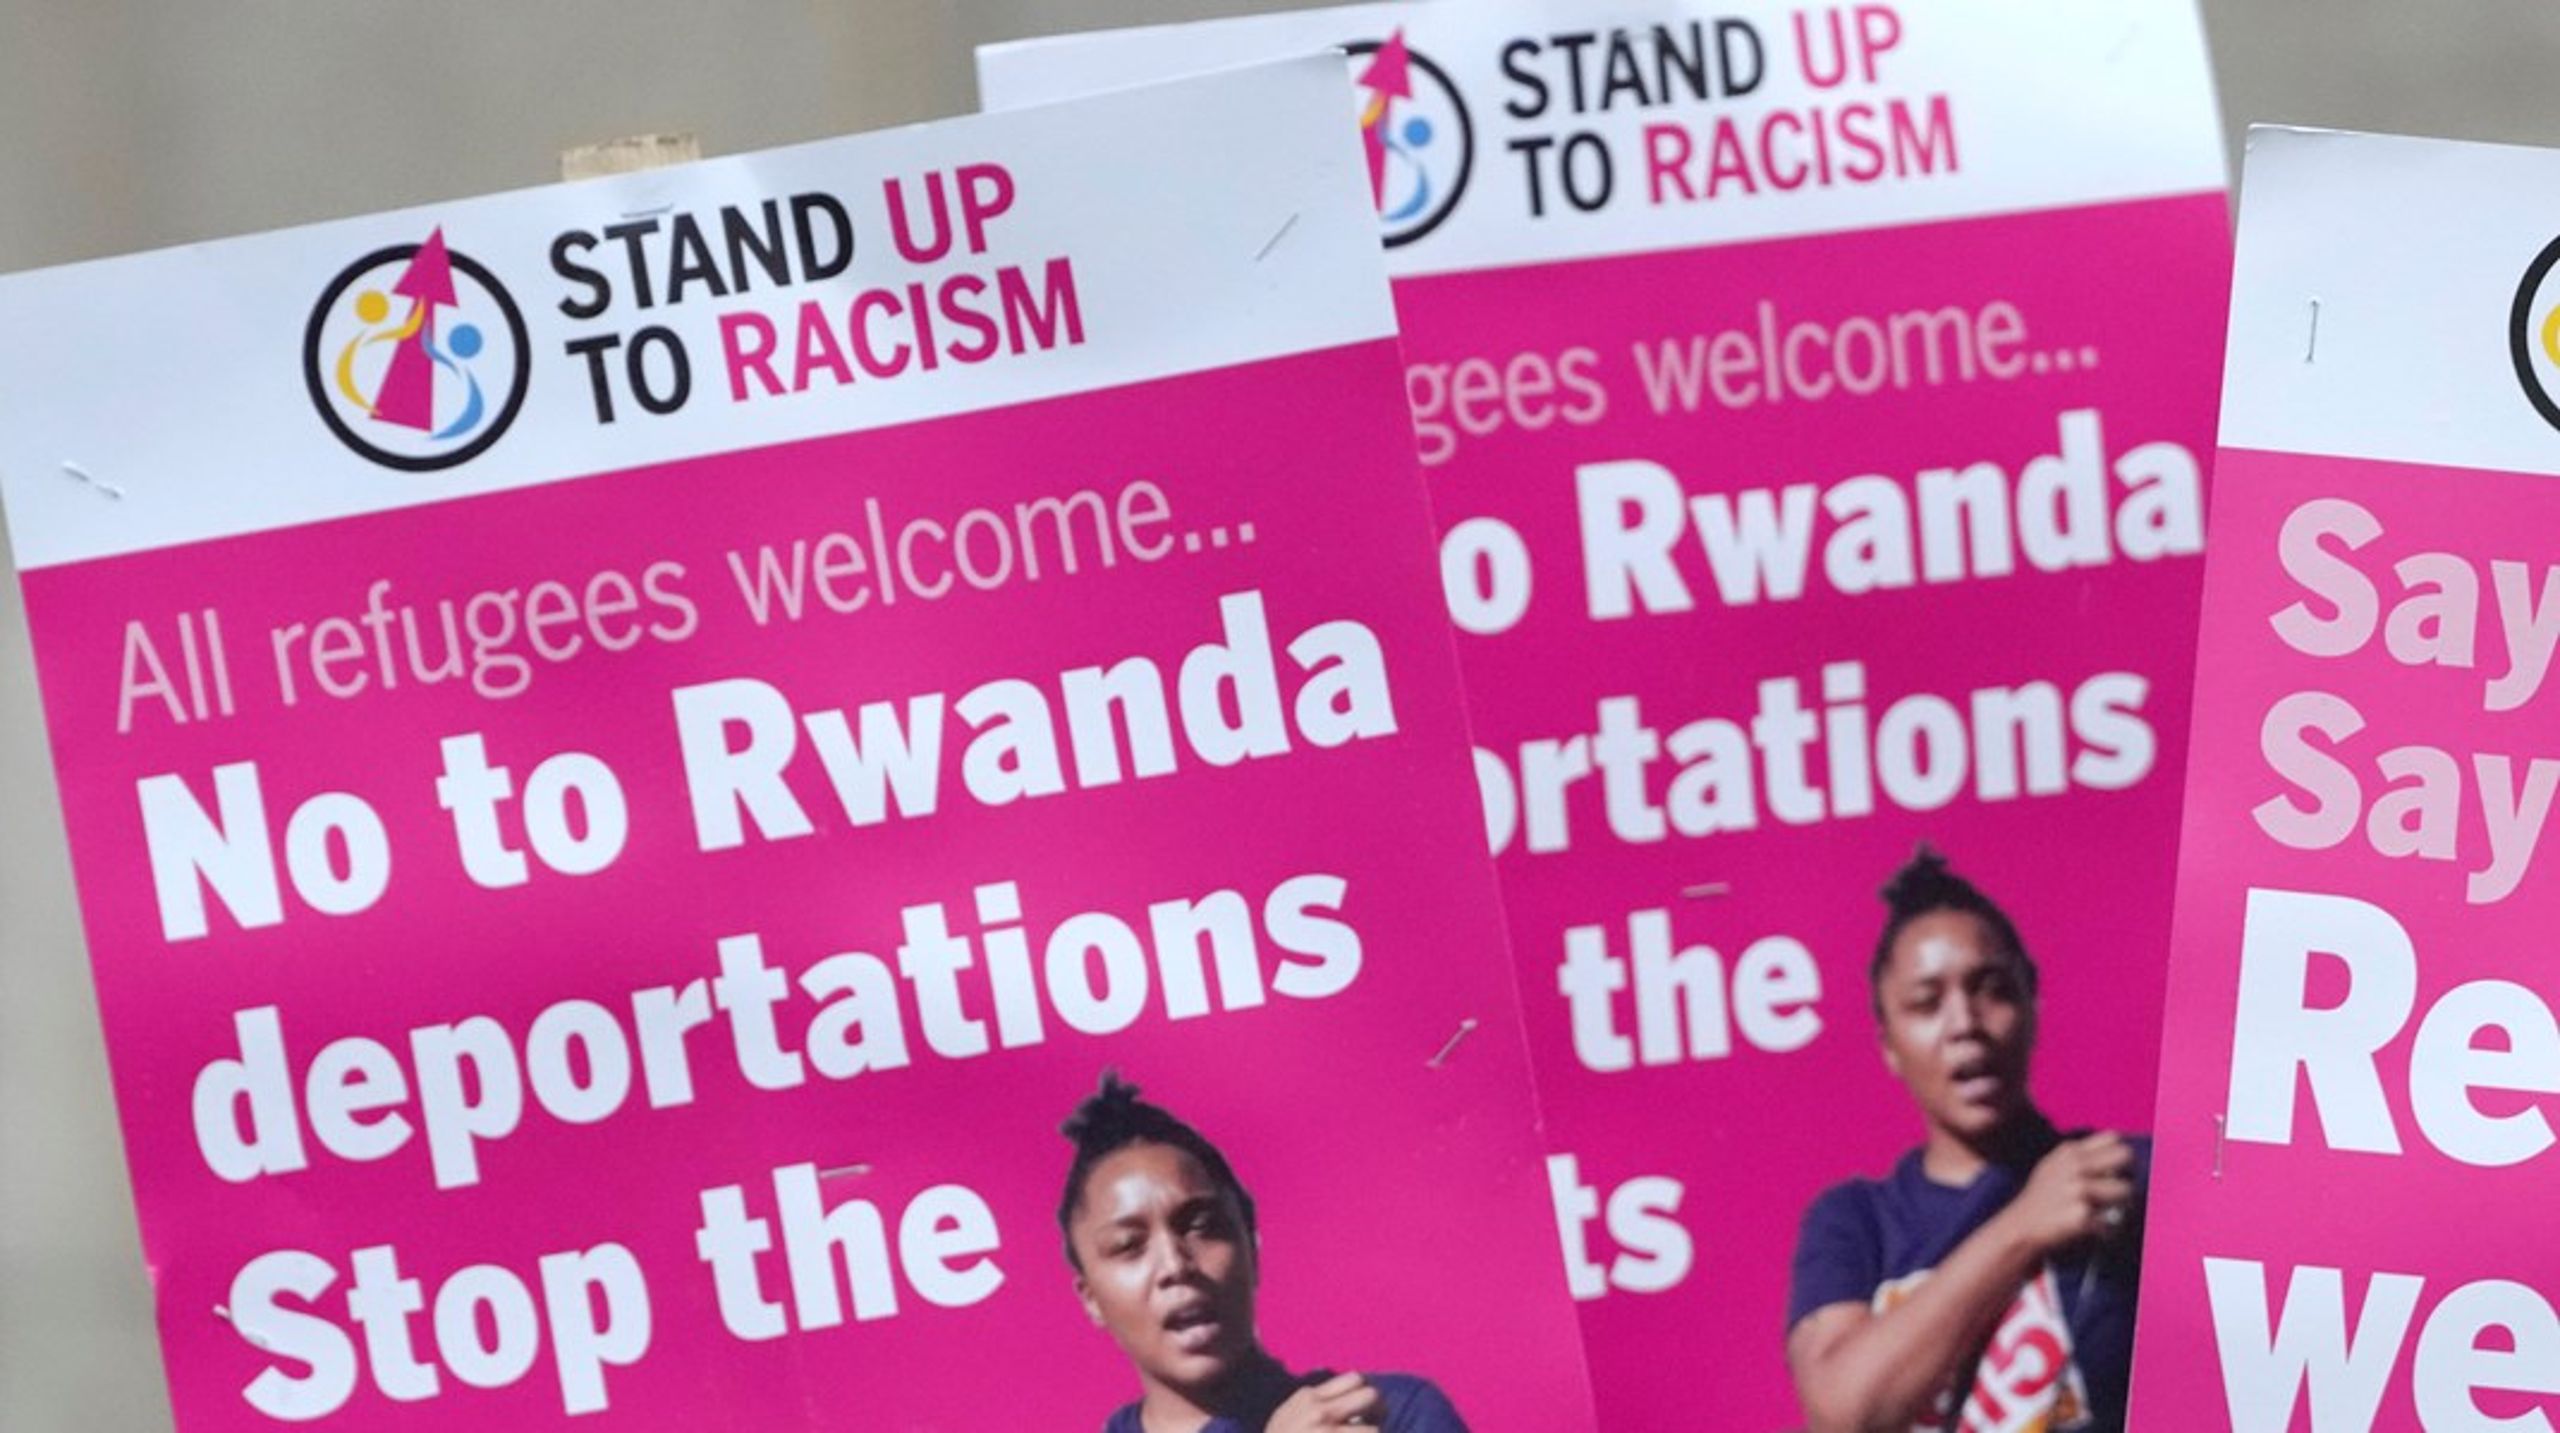 Även i Storbritannien har slutit ett kontroversiellt asylavtal med Rwanda, vilket lett till demonstrationer på hemmaplan.&nbsp;